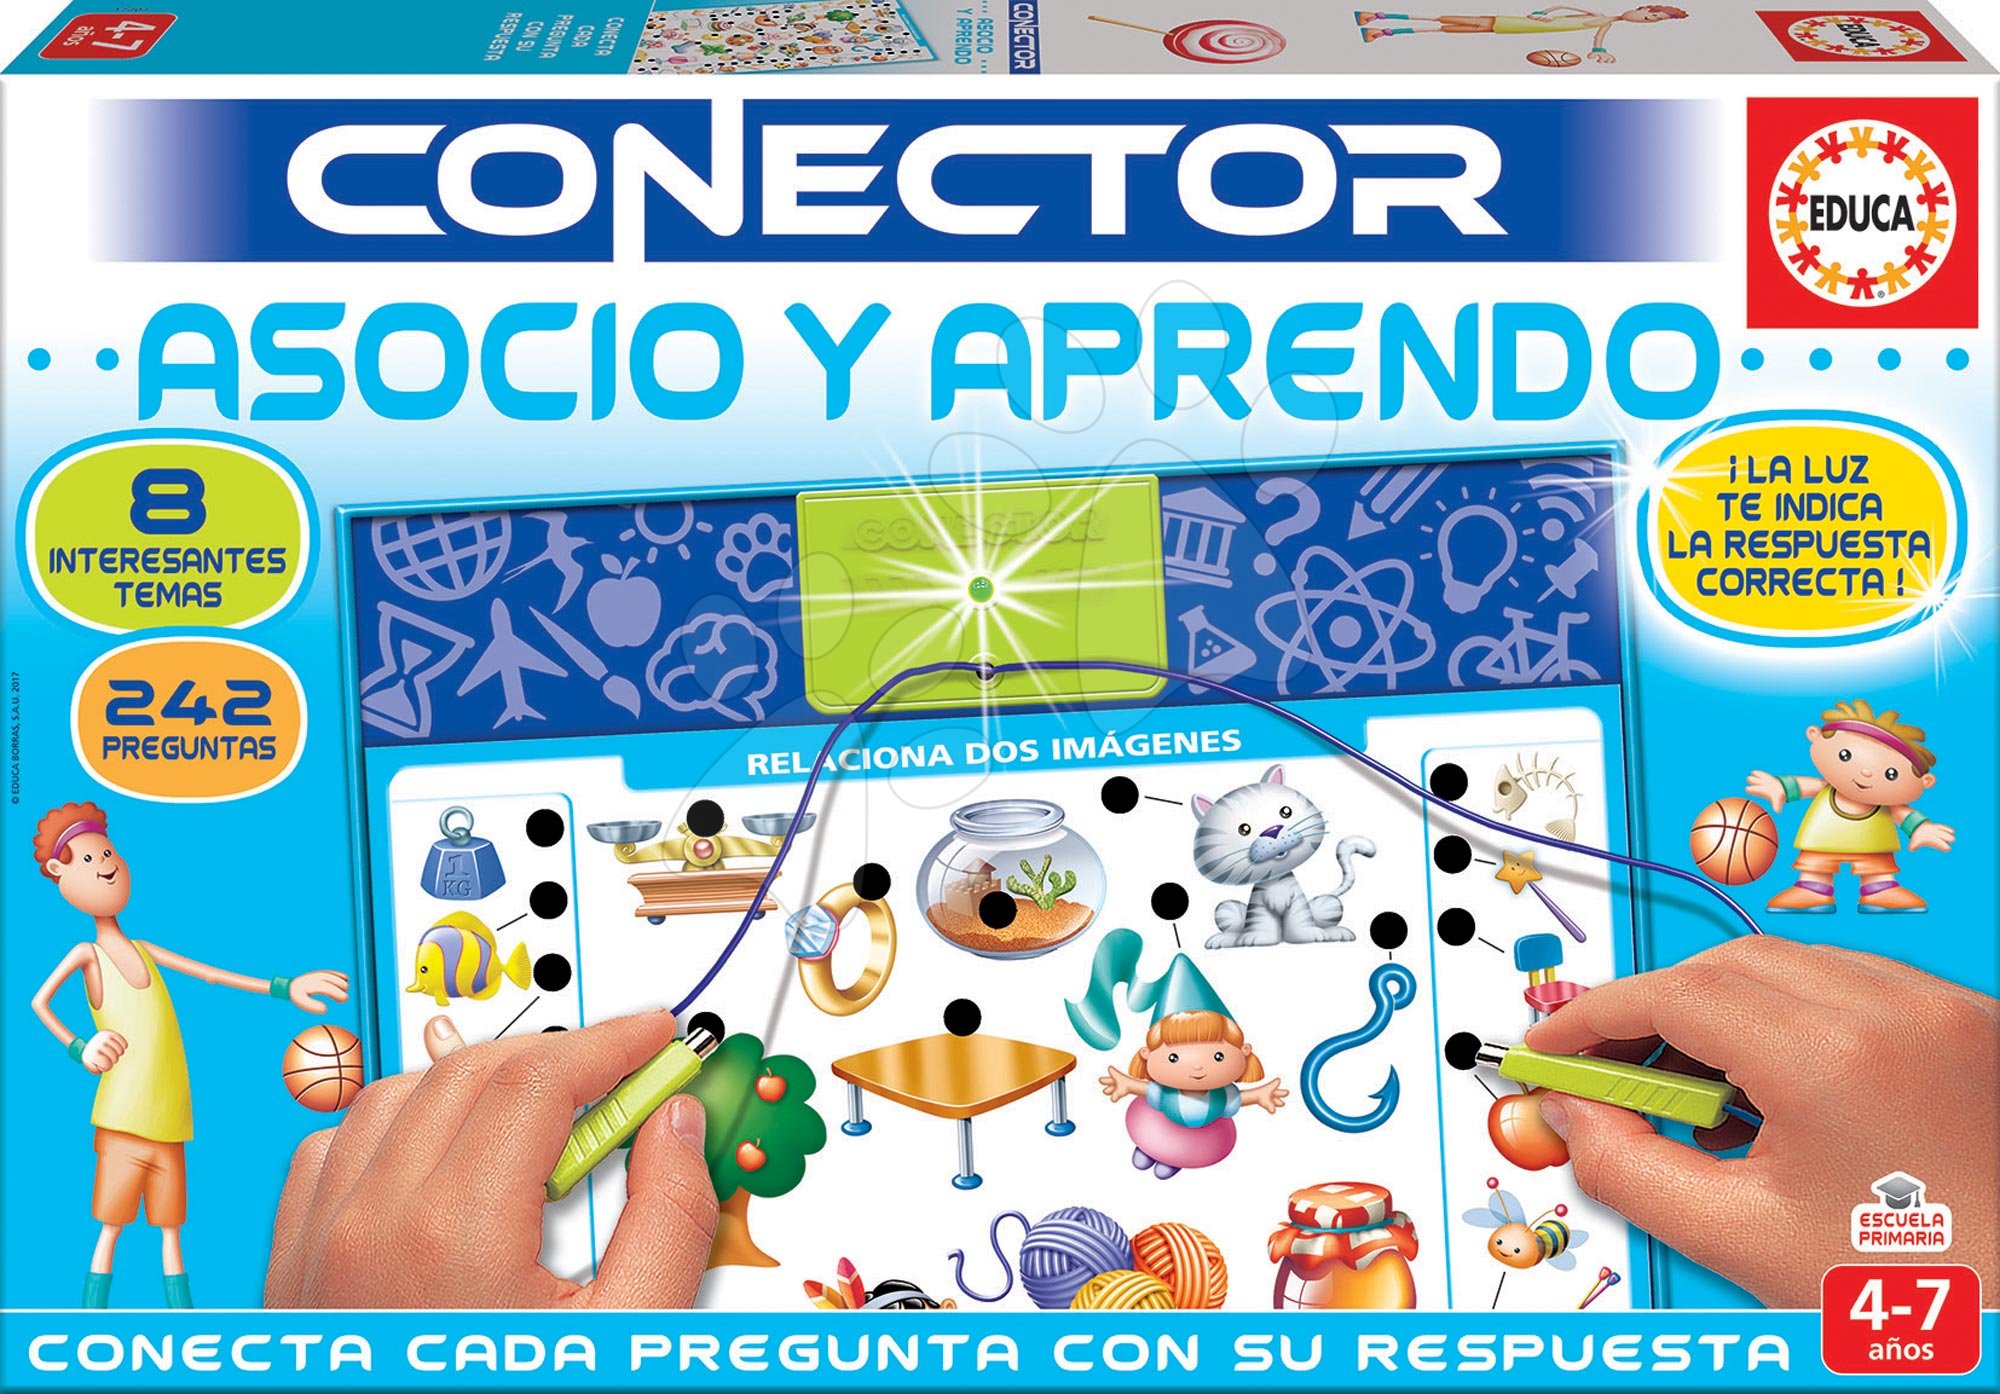 Idegennyelvű társasjátékok - Társasjáték Conector Társítás & Tanulás Educa 242 kérdés spanyol nyelvű 4-7 éves korosztálynak